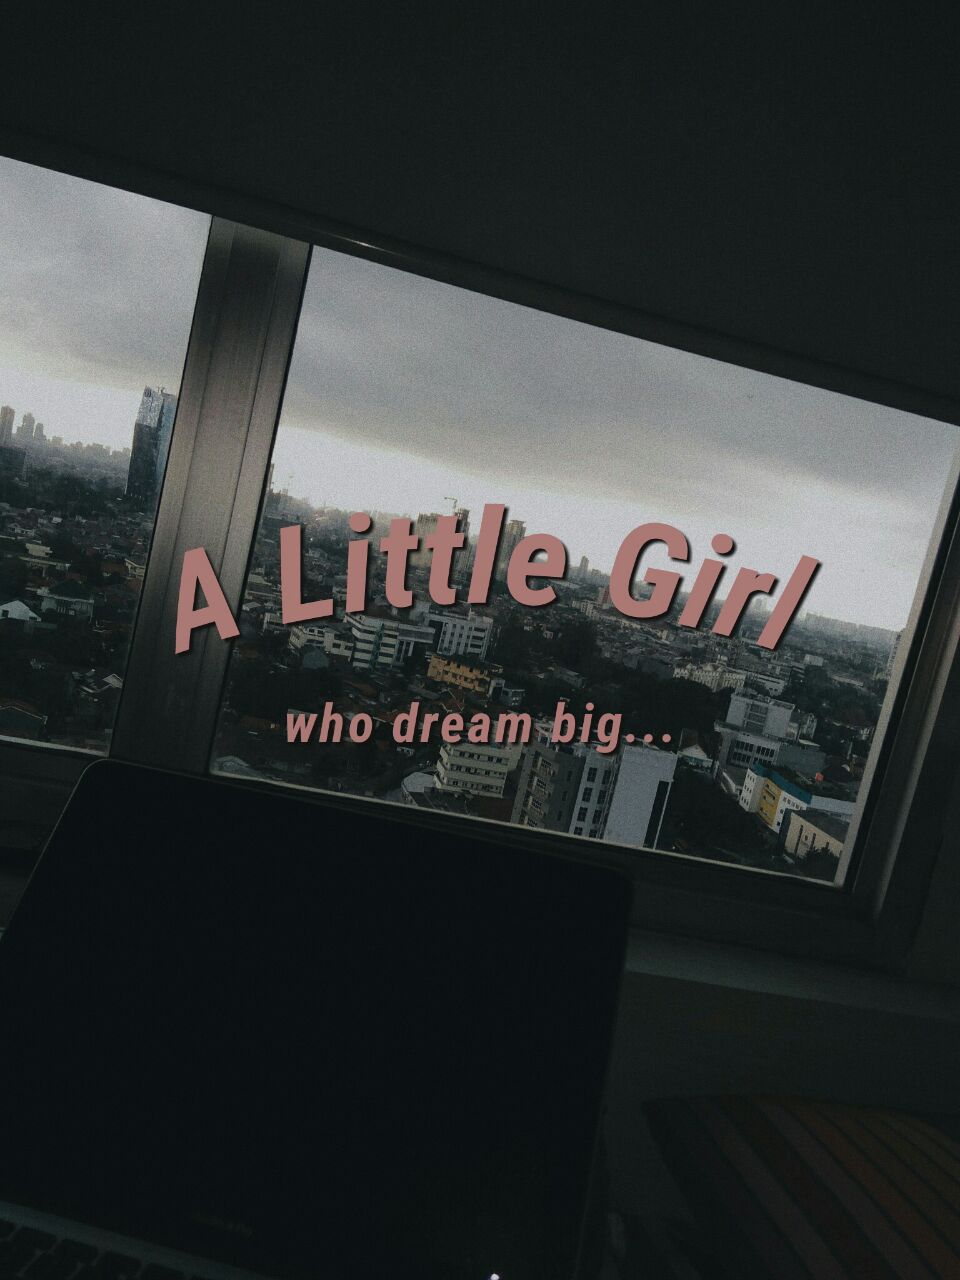 A Little Girl